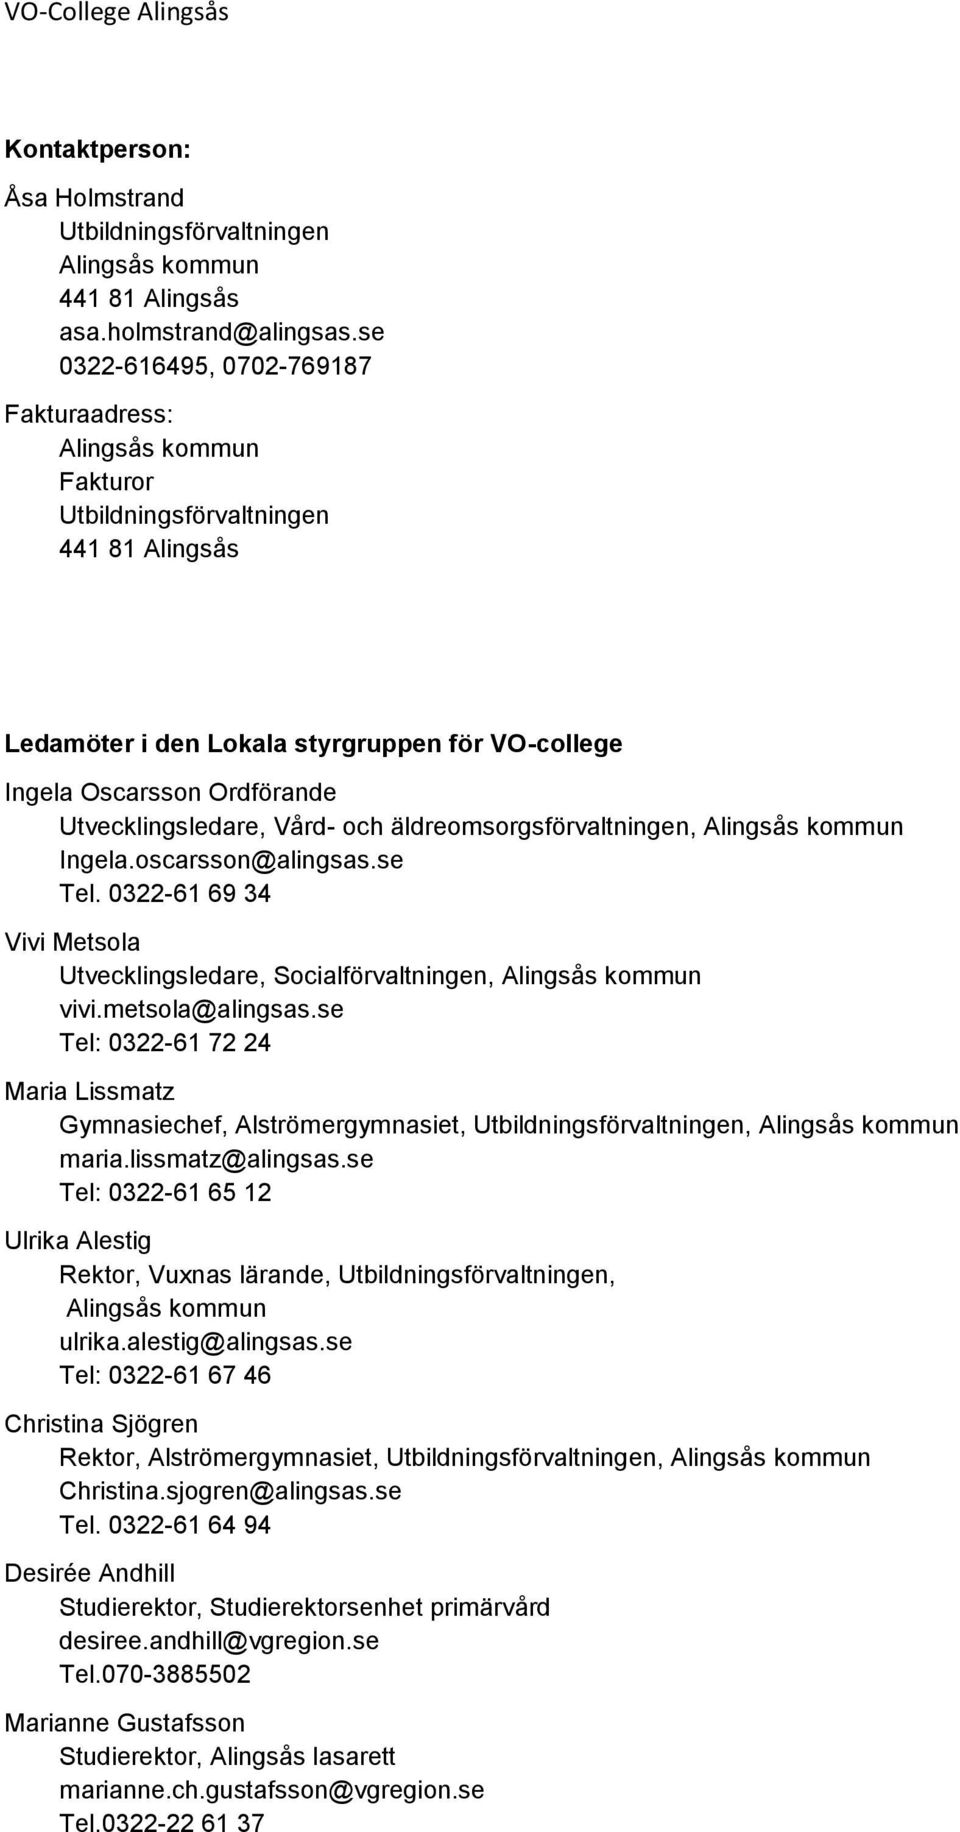 Utvecklingsledare, Vård- och äldreomsorgsförvaltningen, Alingsås kommun Ingela.oscarsson@alingsas.se Tel. 0322-61 69 34 Vivi Metsola Utvecklingsledare, Socialförvaltningen, Alingsås kommun vivi.